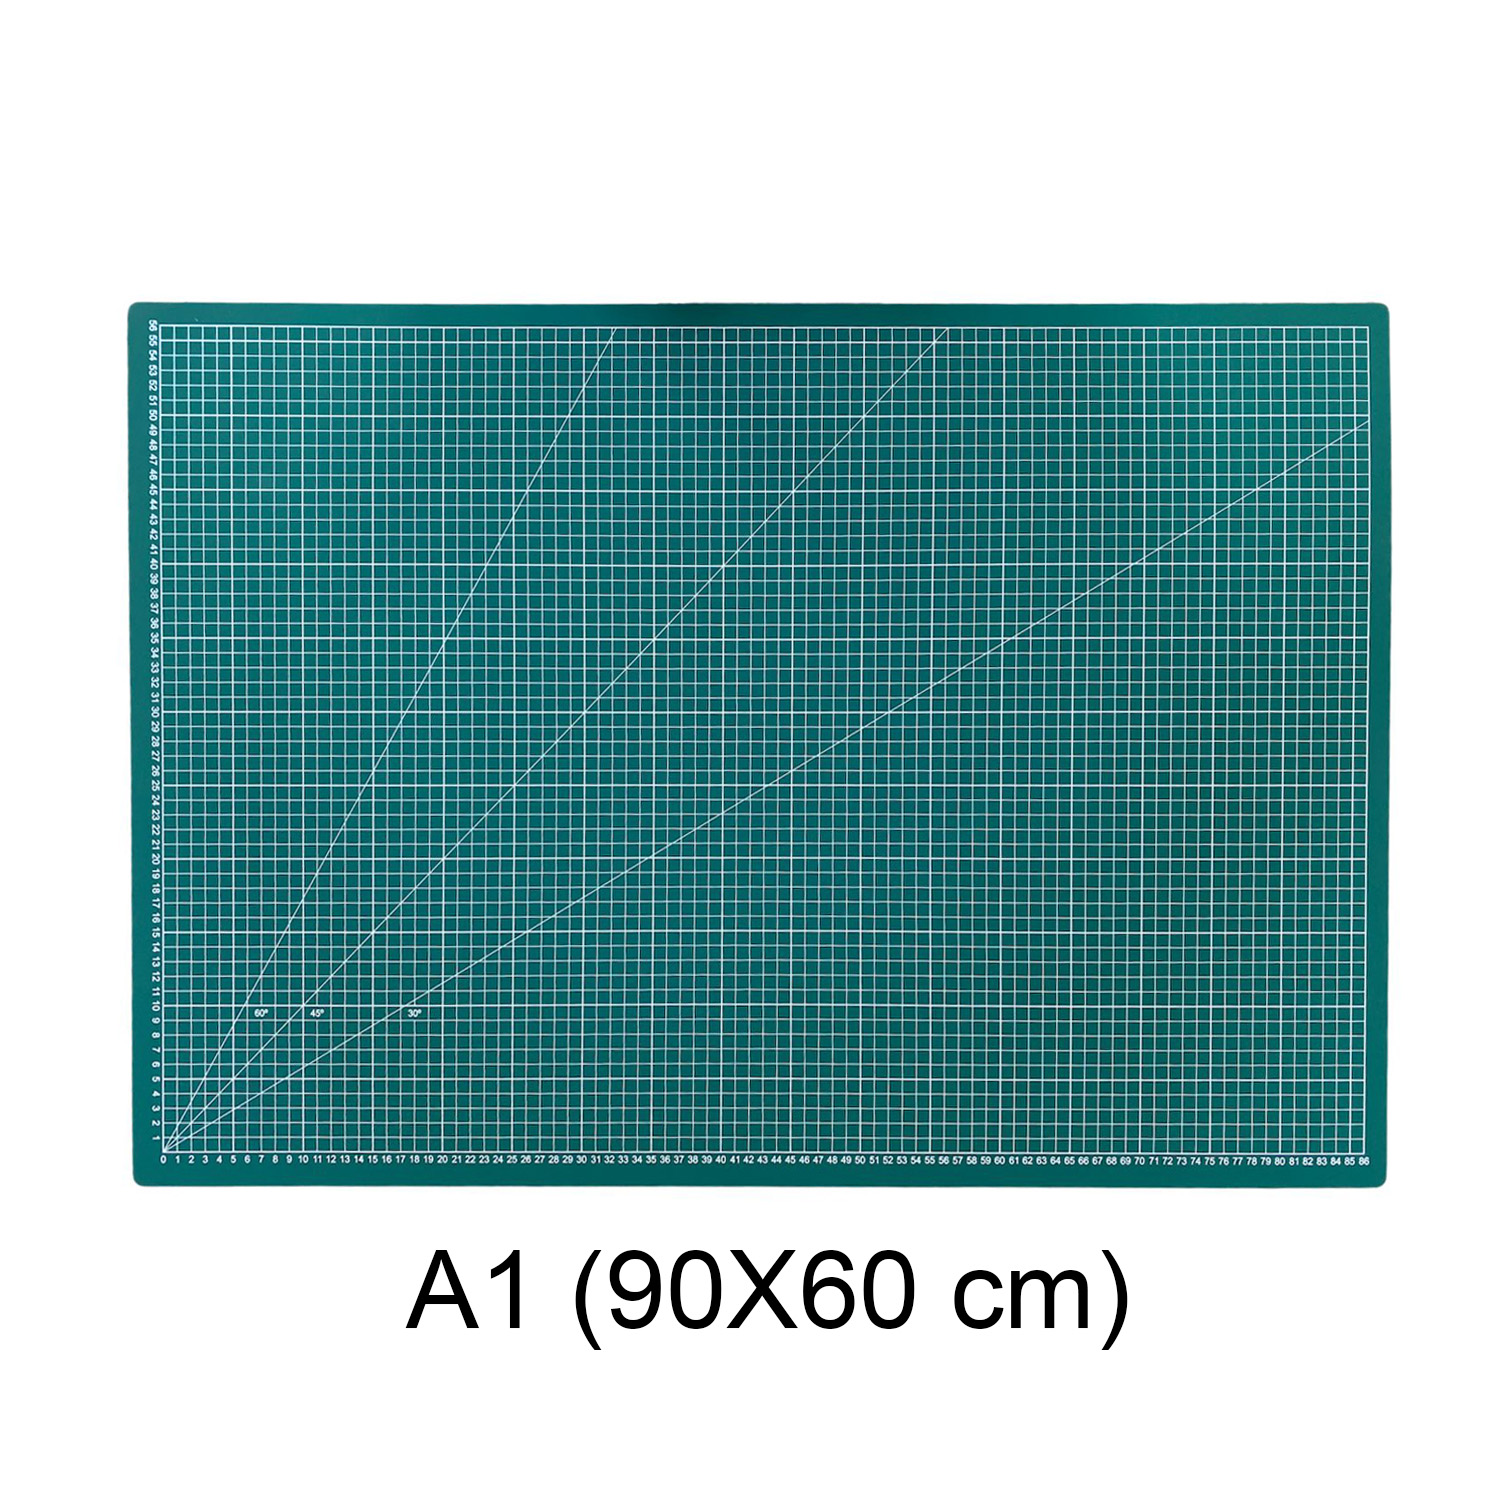 Base de Corte 90X60 cm (A1) Cuadriculada y con Ángulos